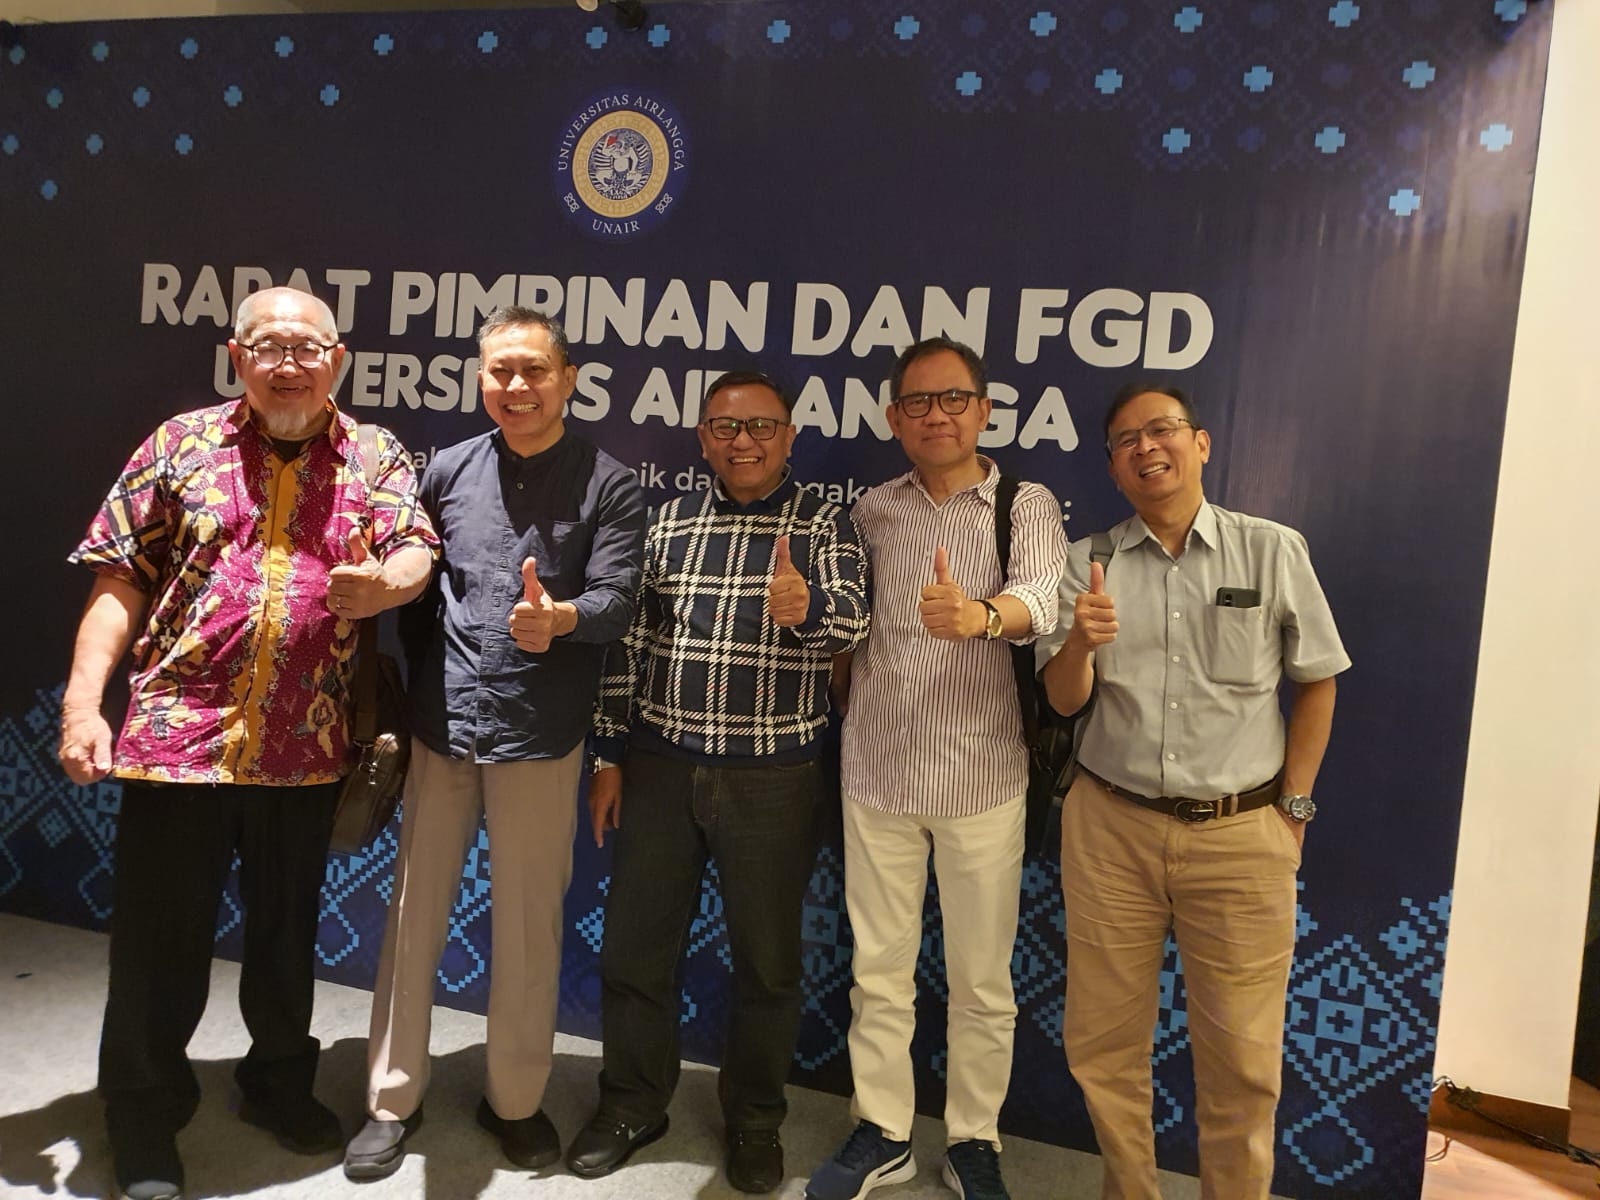 FGD dan Rapat Pimpinan Universitas Airlangga (1): Membangun Kualitas, Wujudkan Universitas Kewirausahaan